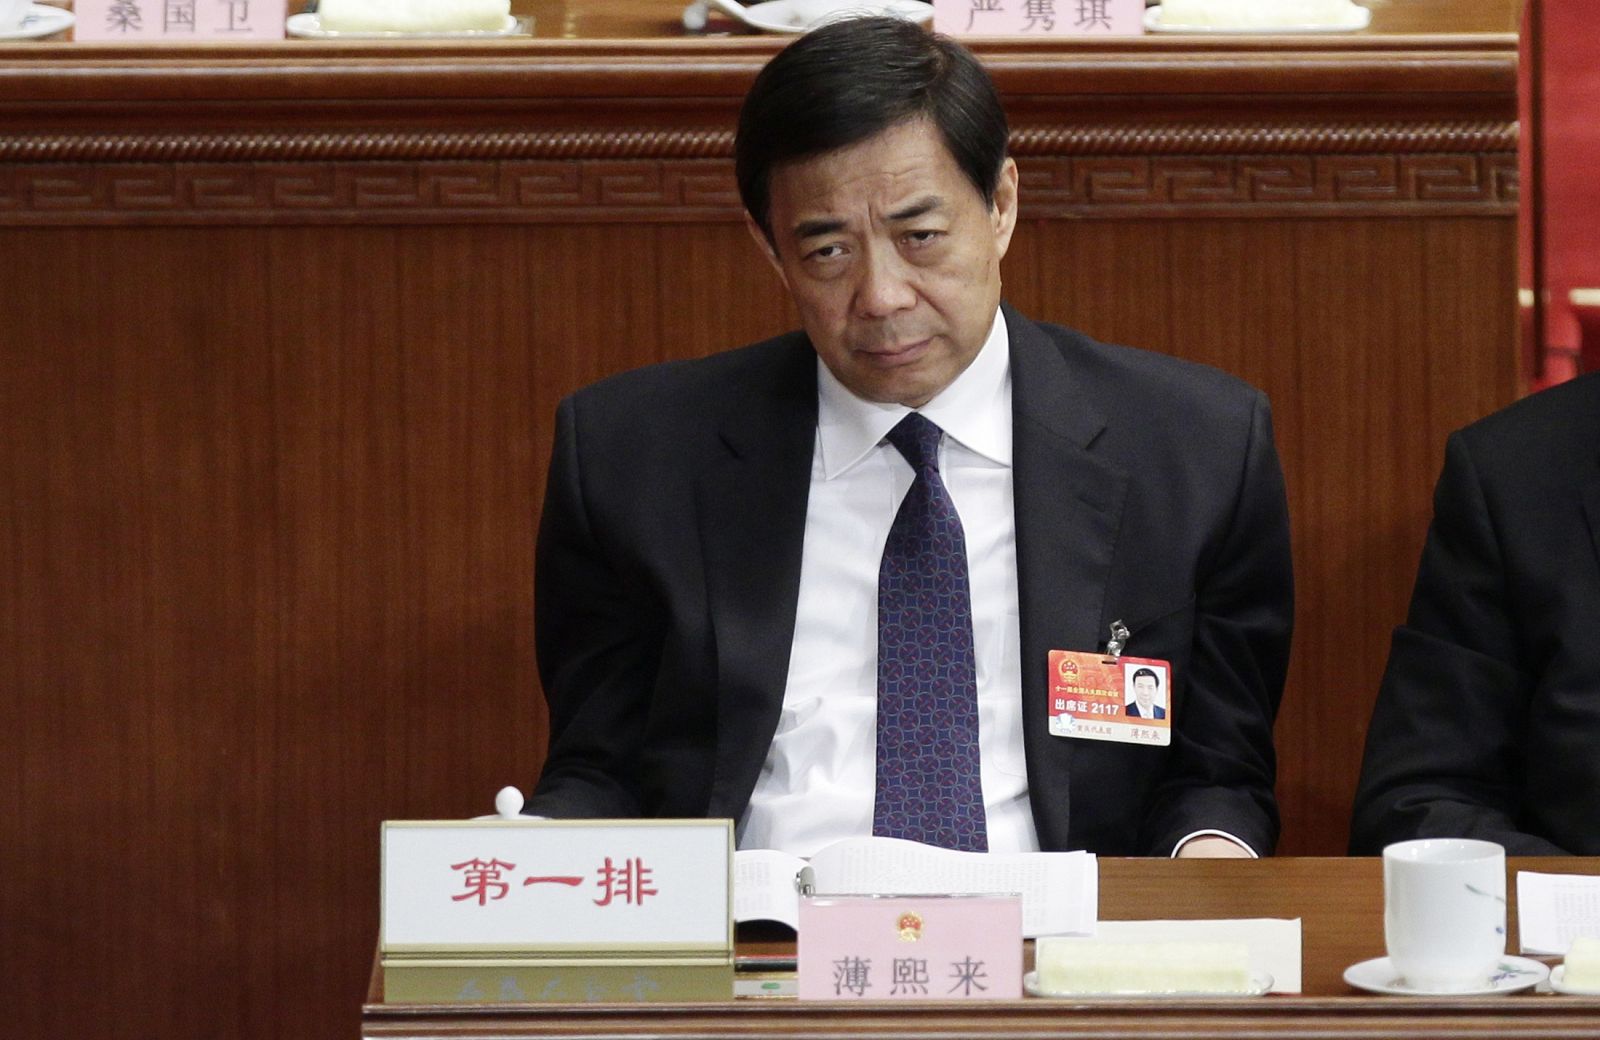 El exdirigente comunista chino Bo Xilai, en una imagen de archiovo durante un encuentro plenario en el Parlamento chino, en marzo de 2011